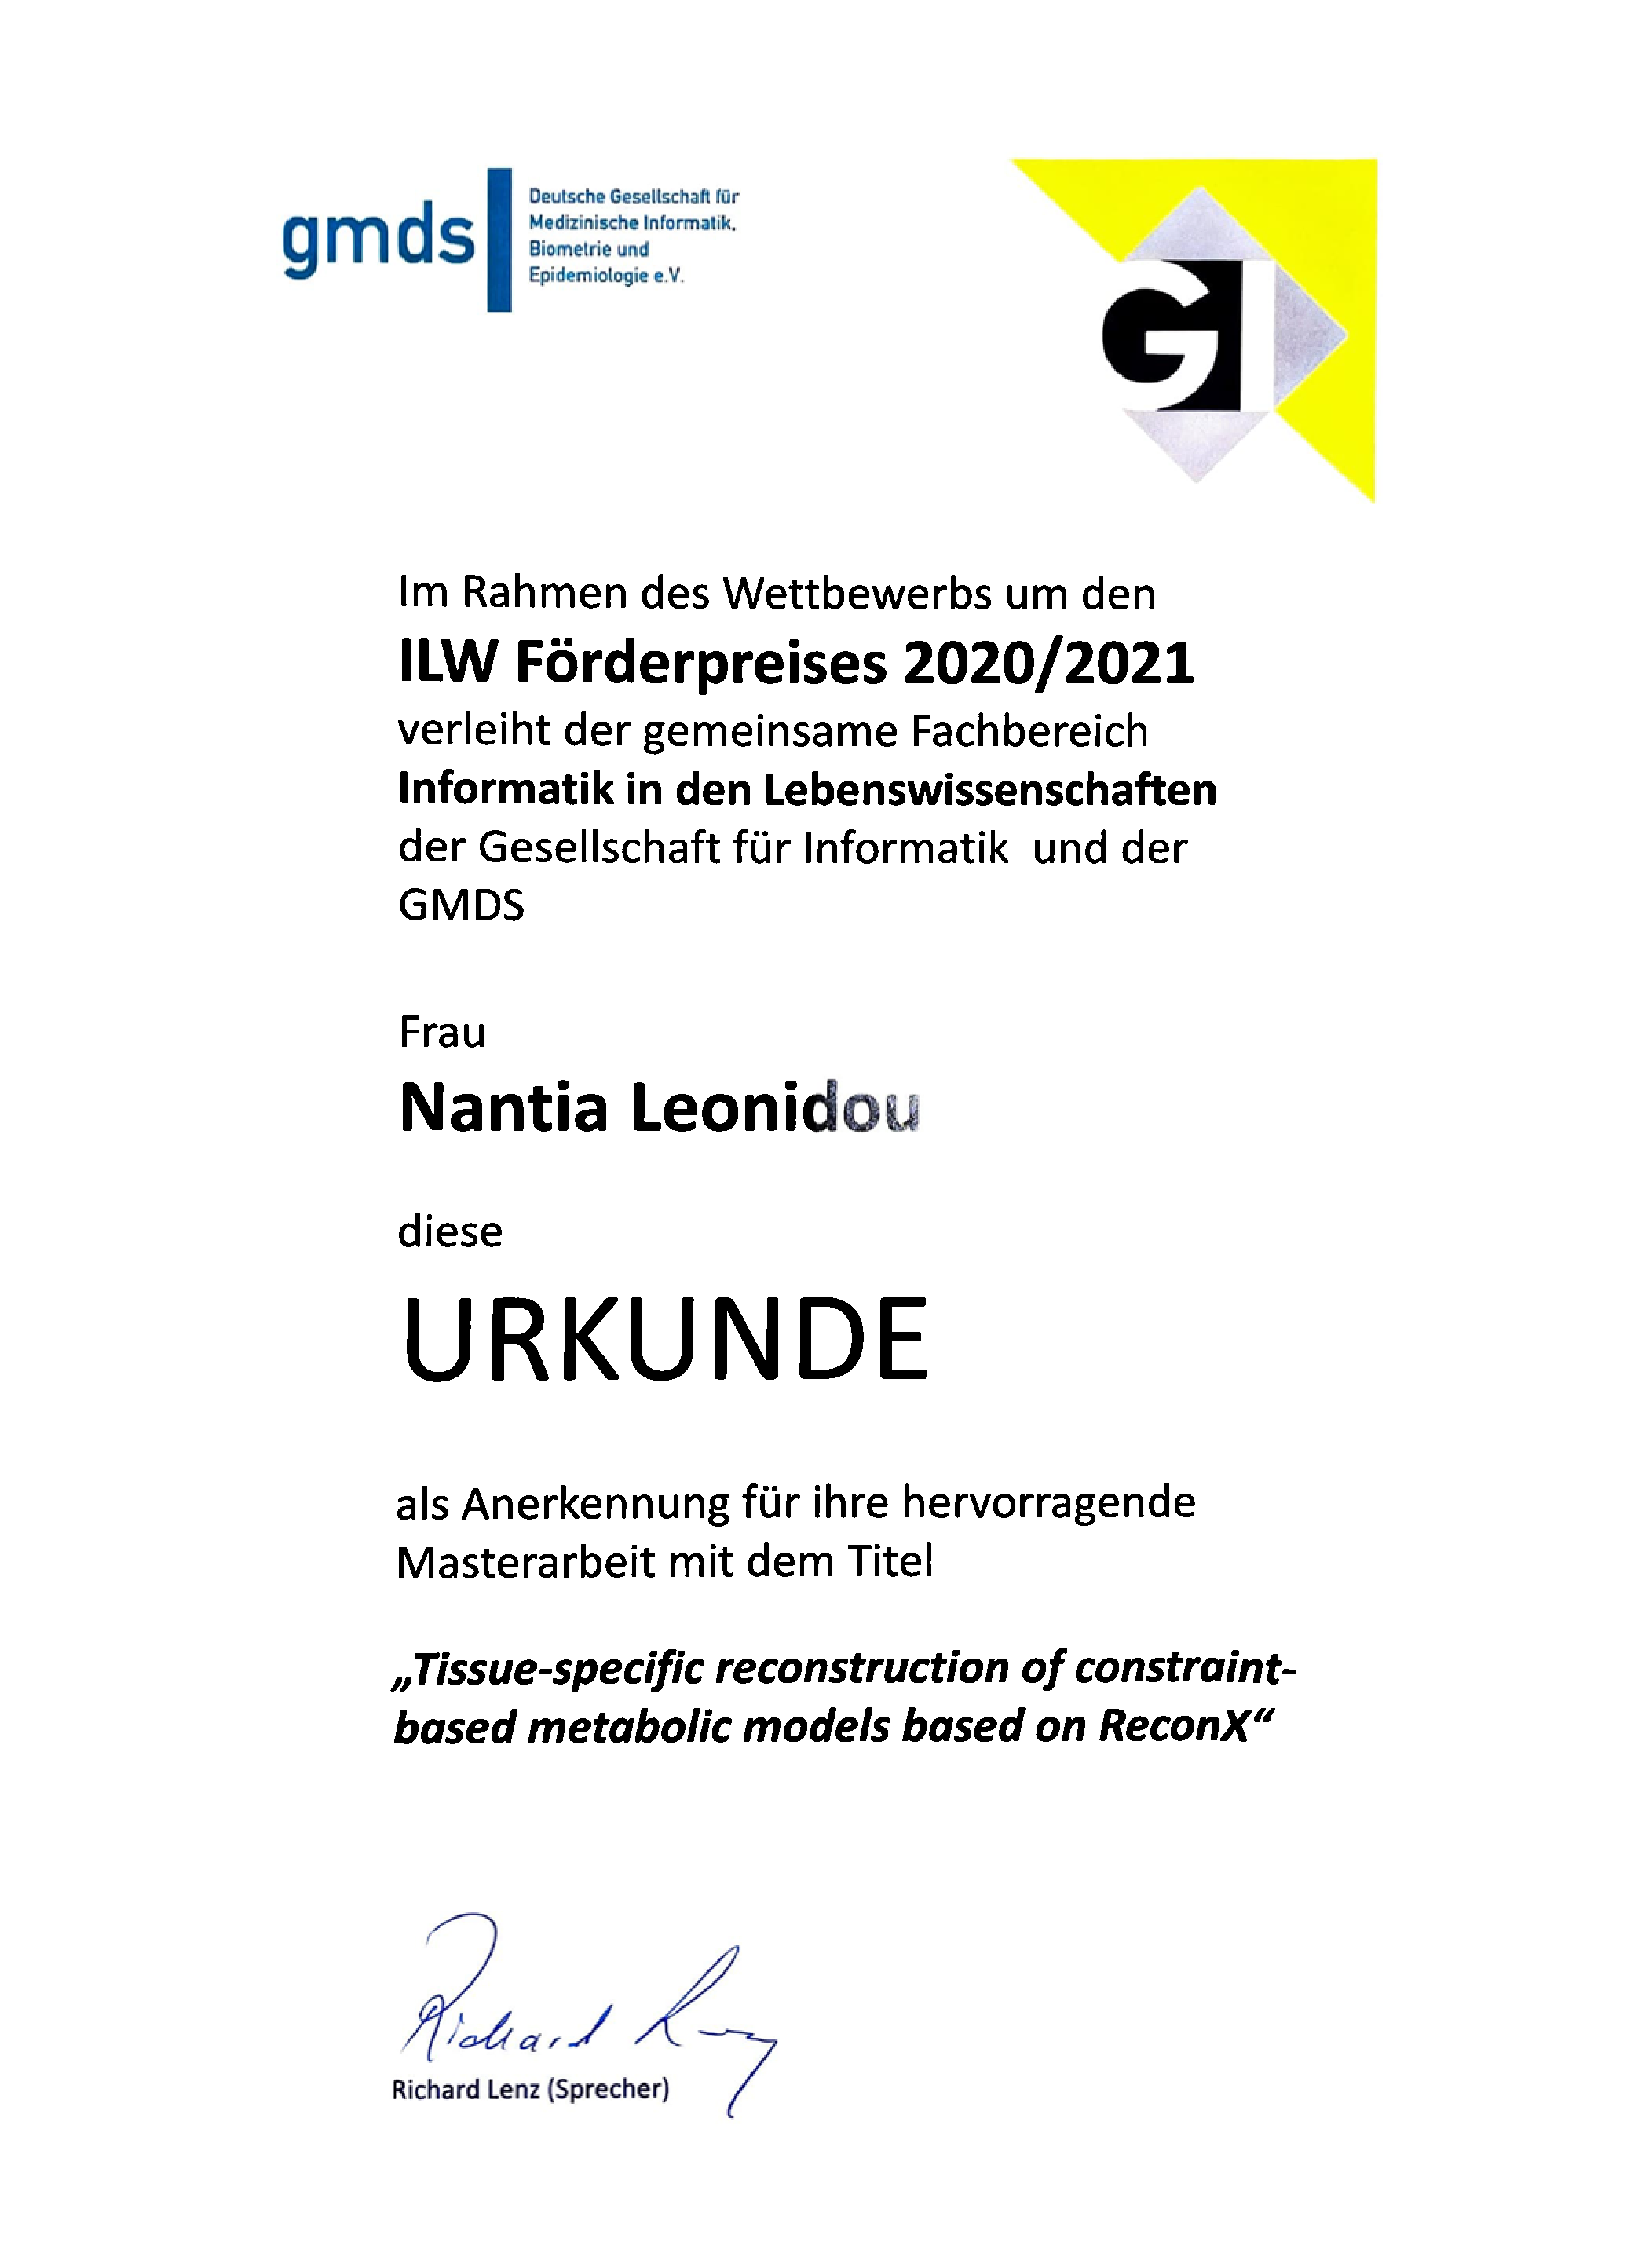 Best thesis award 2020/21 for Nantia Leonidou